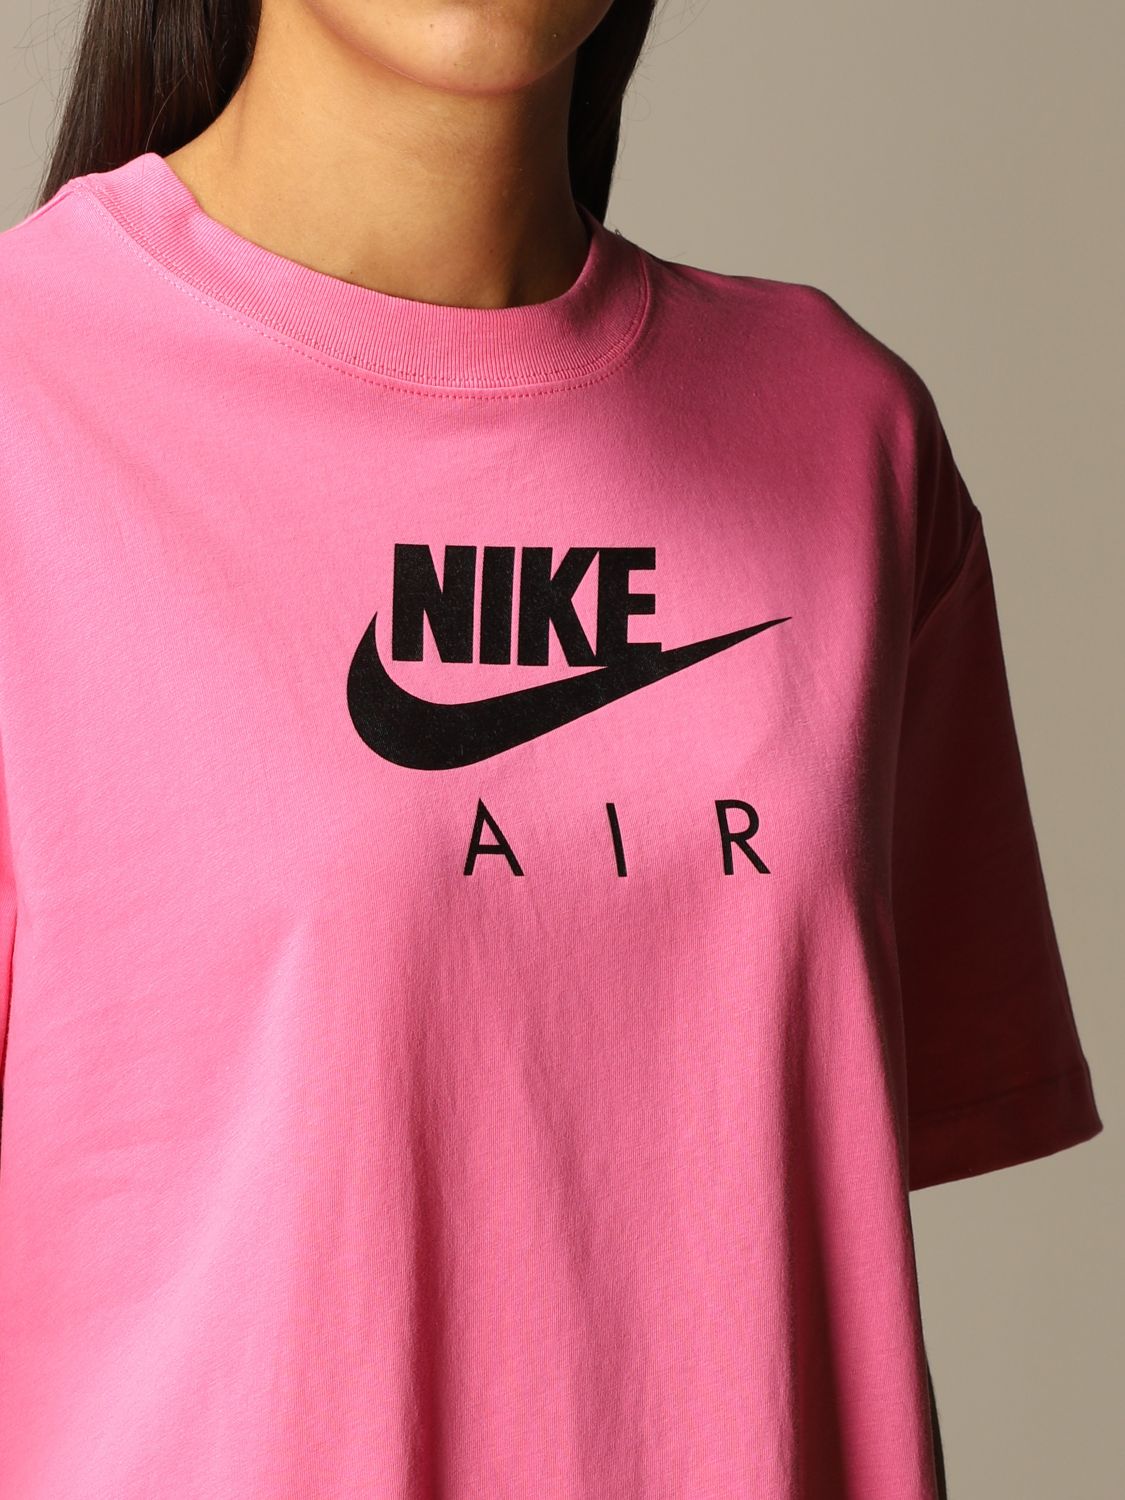 nike t shirt women's pink